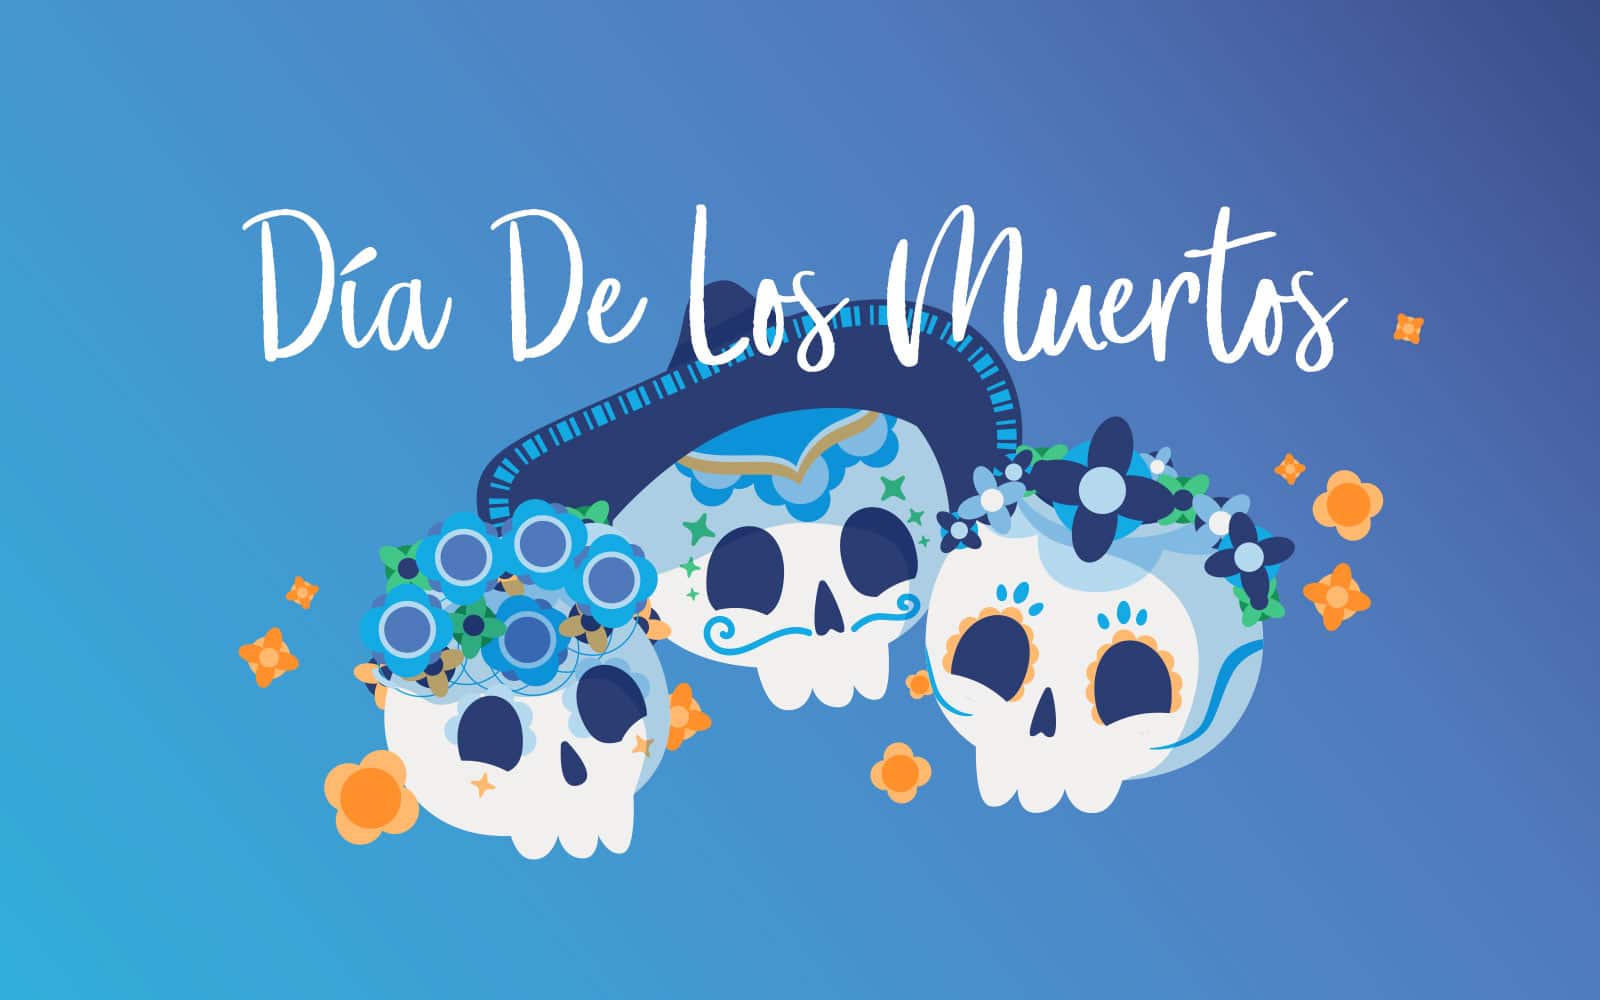 History of Día de los Muertos